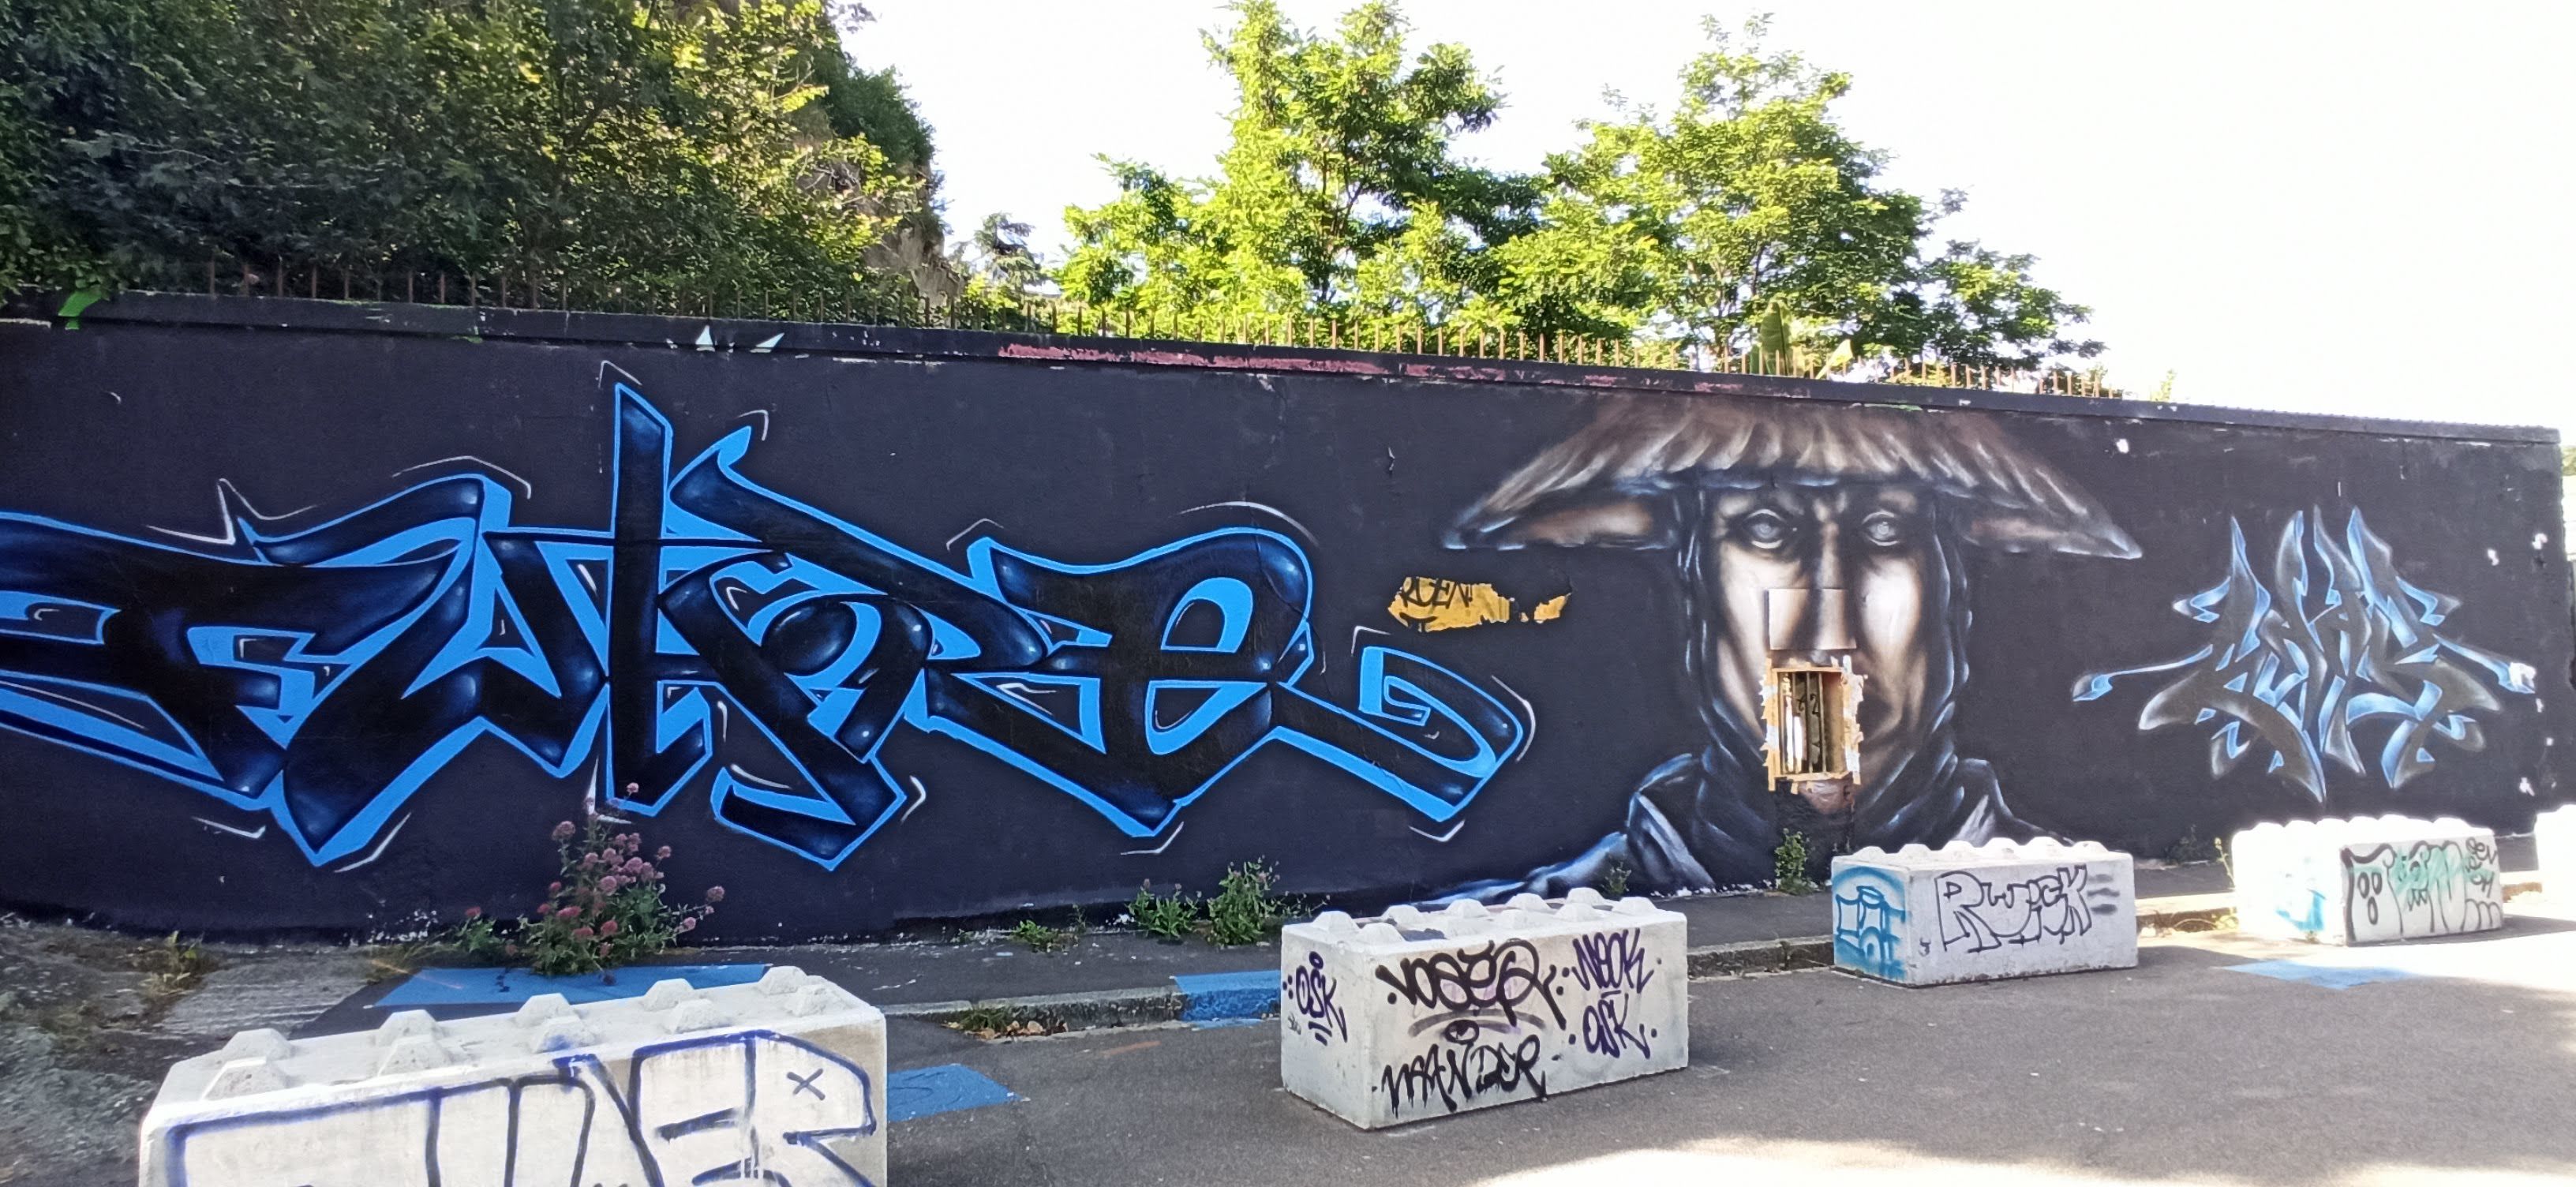 Graffiti 5120  capturé par Rabot à Nantes France